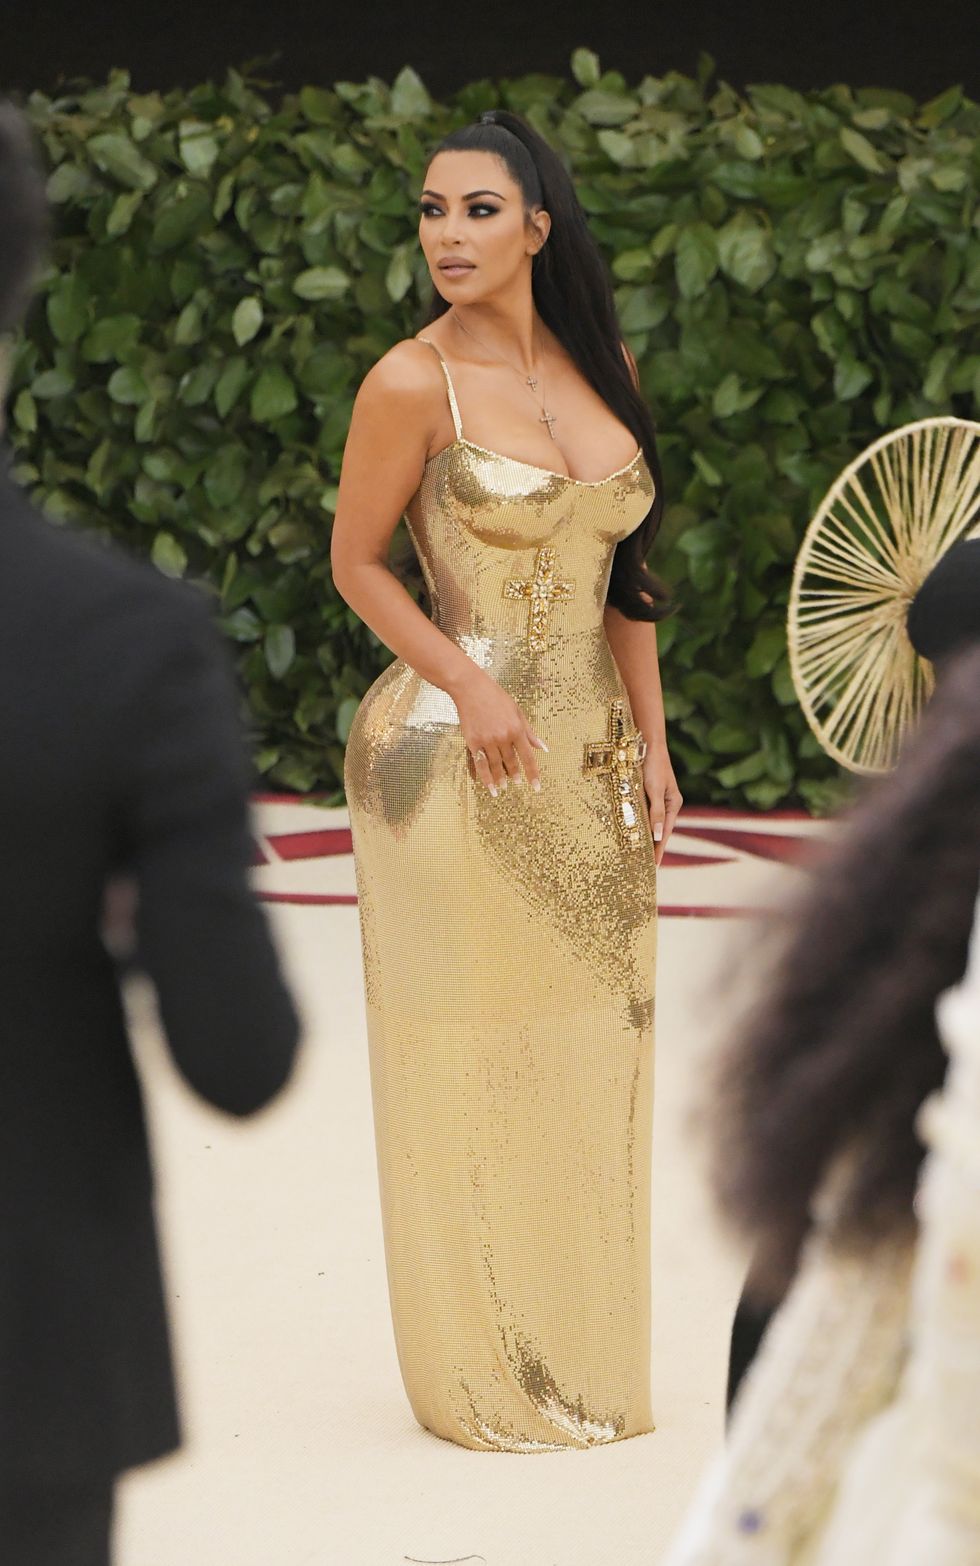 Kim Kardashian Wears Shiny Gold Dress to the Met Gala Kanye Skips Met